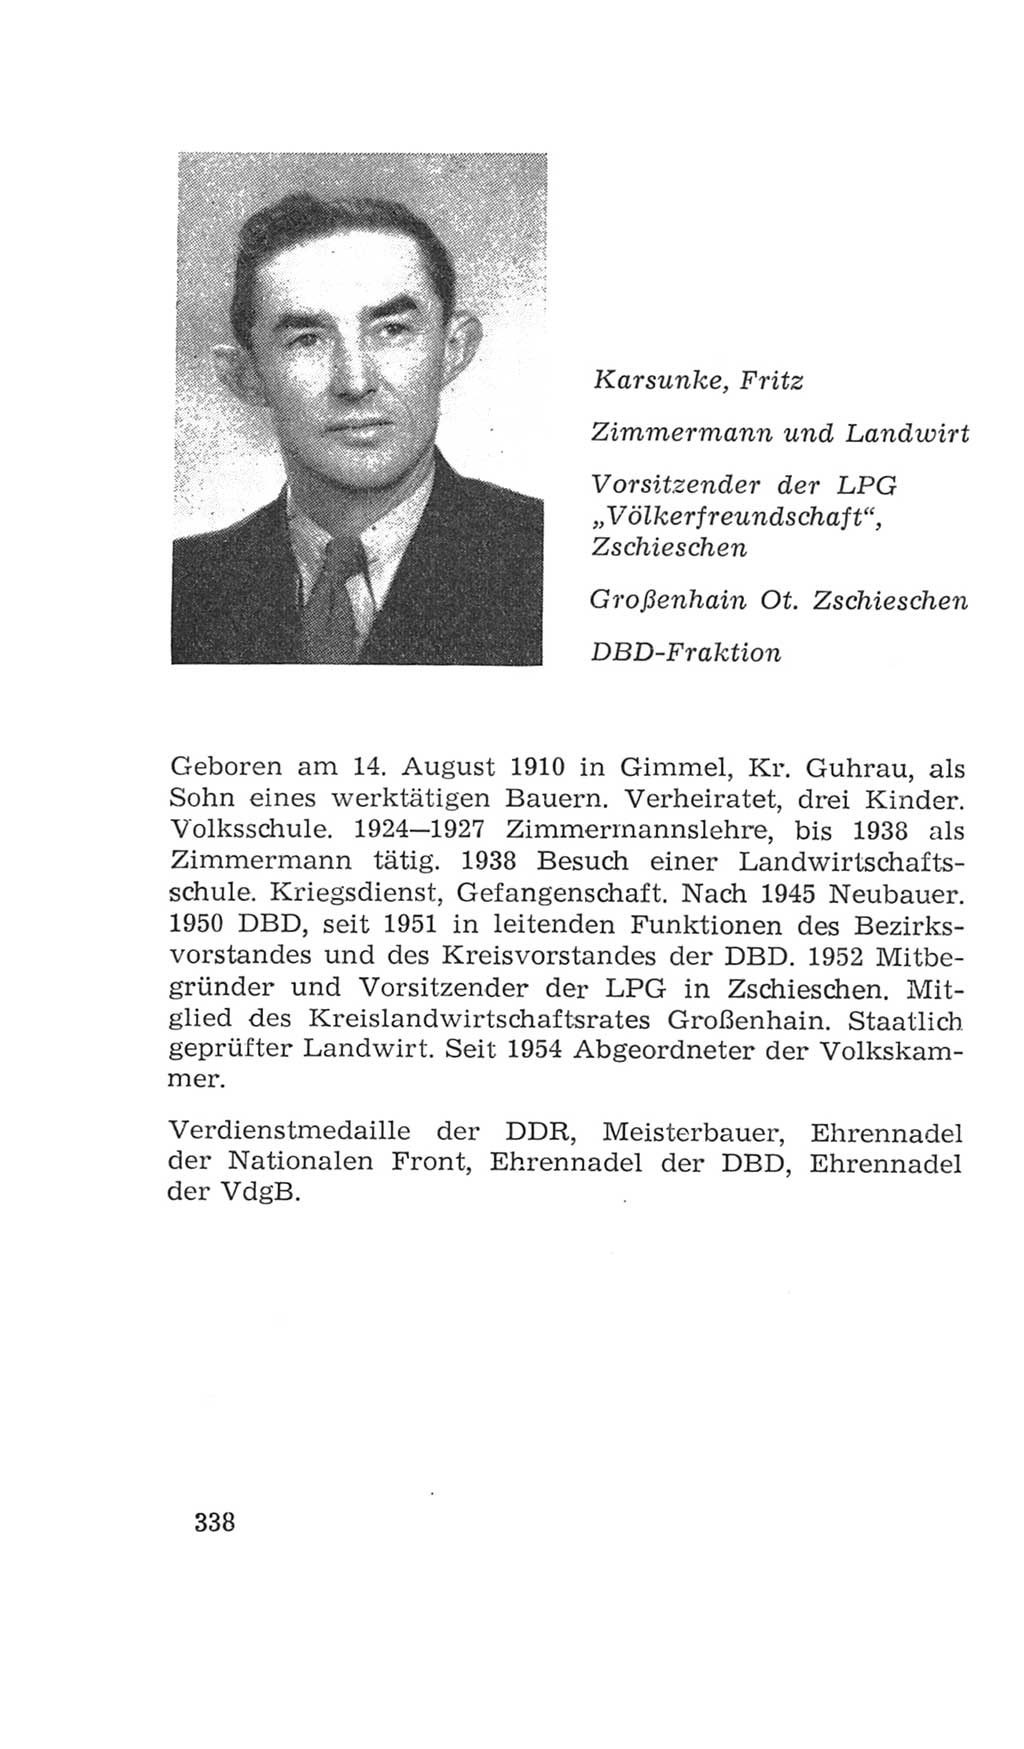 Volkskammer (VK) der Deutschen Demokratischen Republik (DDR), 4. Wahlperiode 1963-1967, Seite 338 (VK. DDR 4. WP. 1963-1967, S. 338)